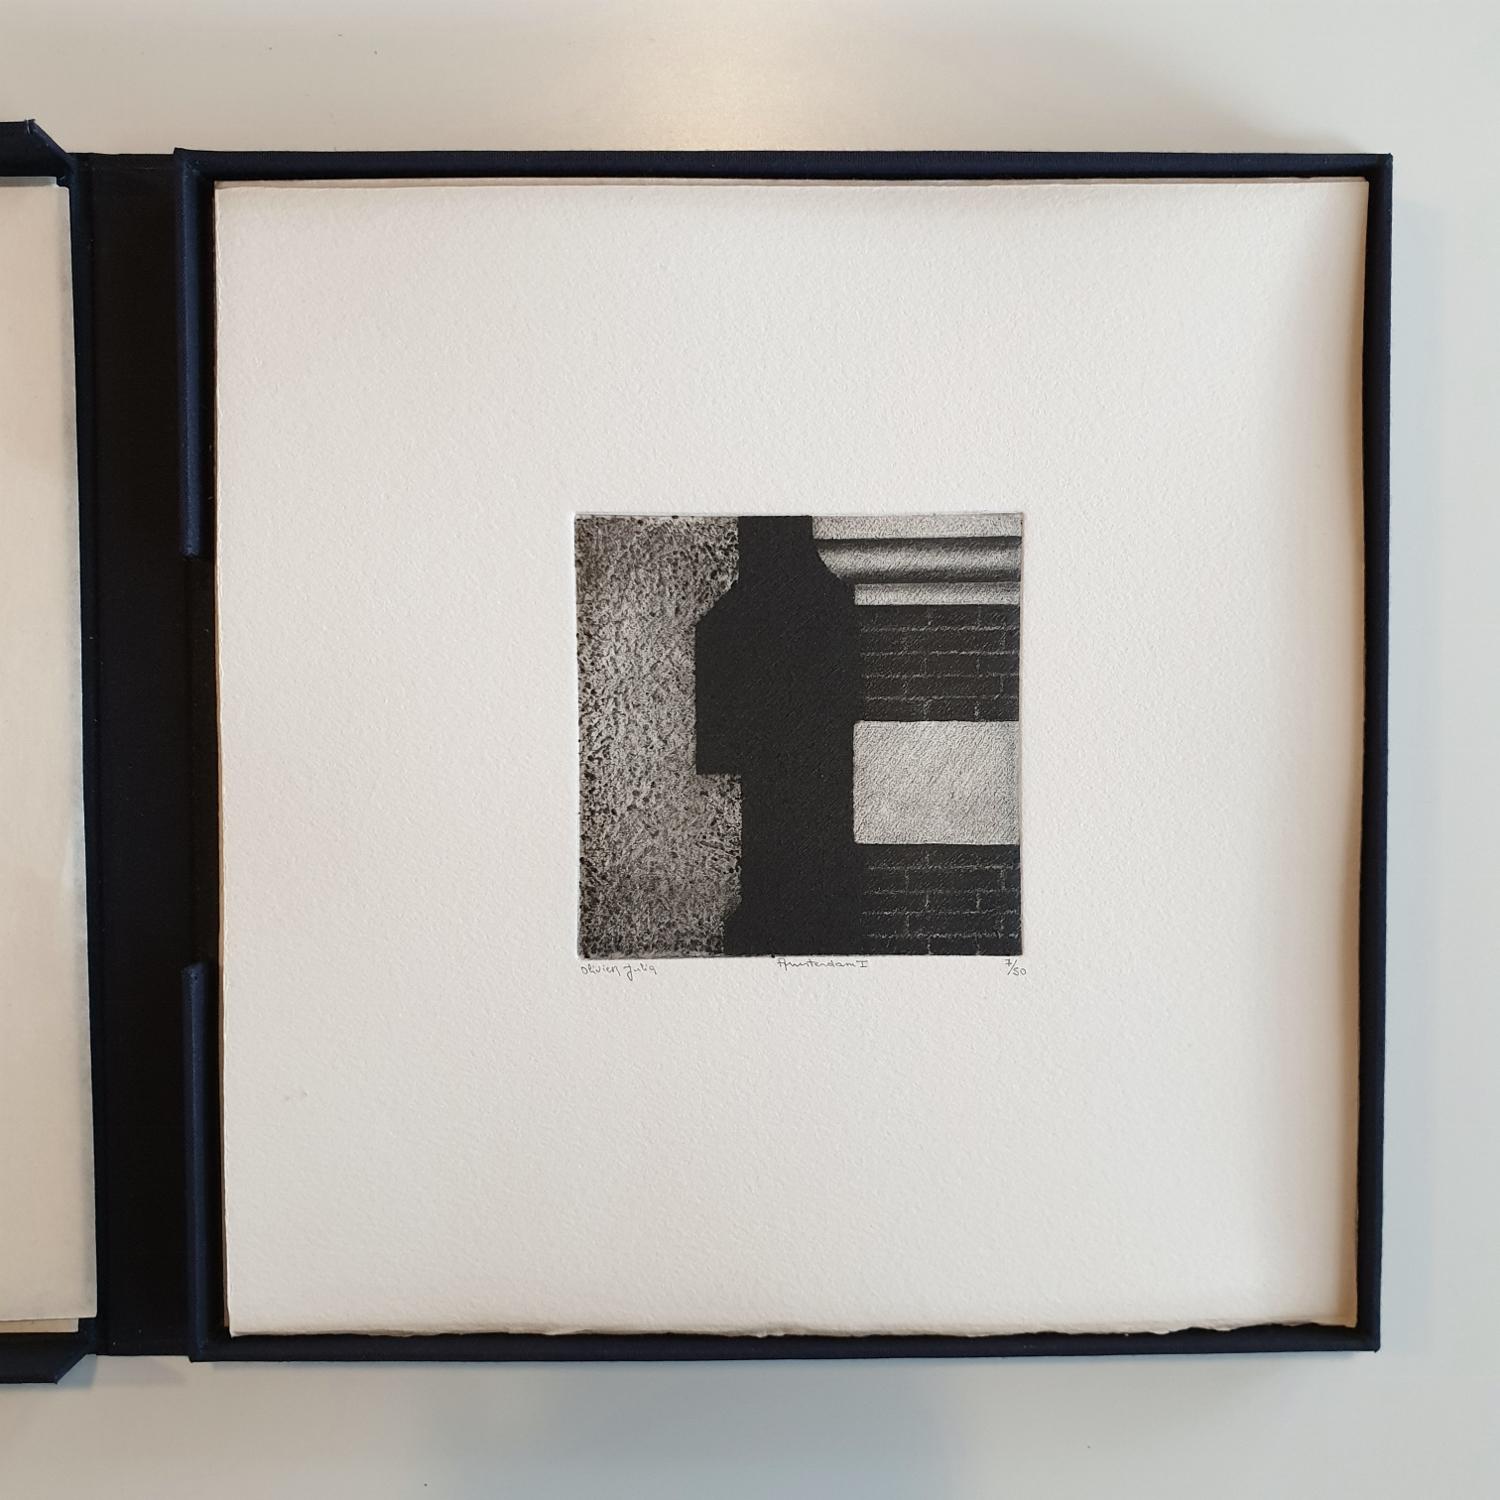 Amsterdam: Amsterdam  3/50- Sammlerschachtel mit zehn schwarz-weißen Aquatinta-Radierungen  (Minimalistisch), Print, von Olivier Julia